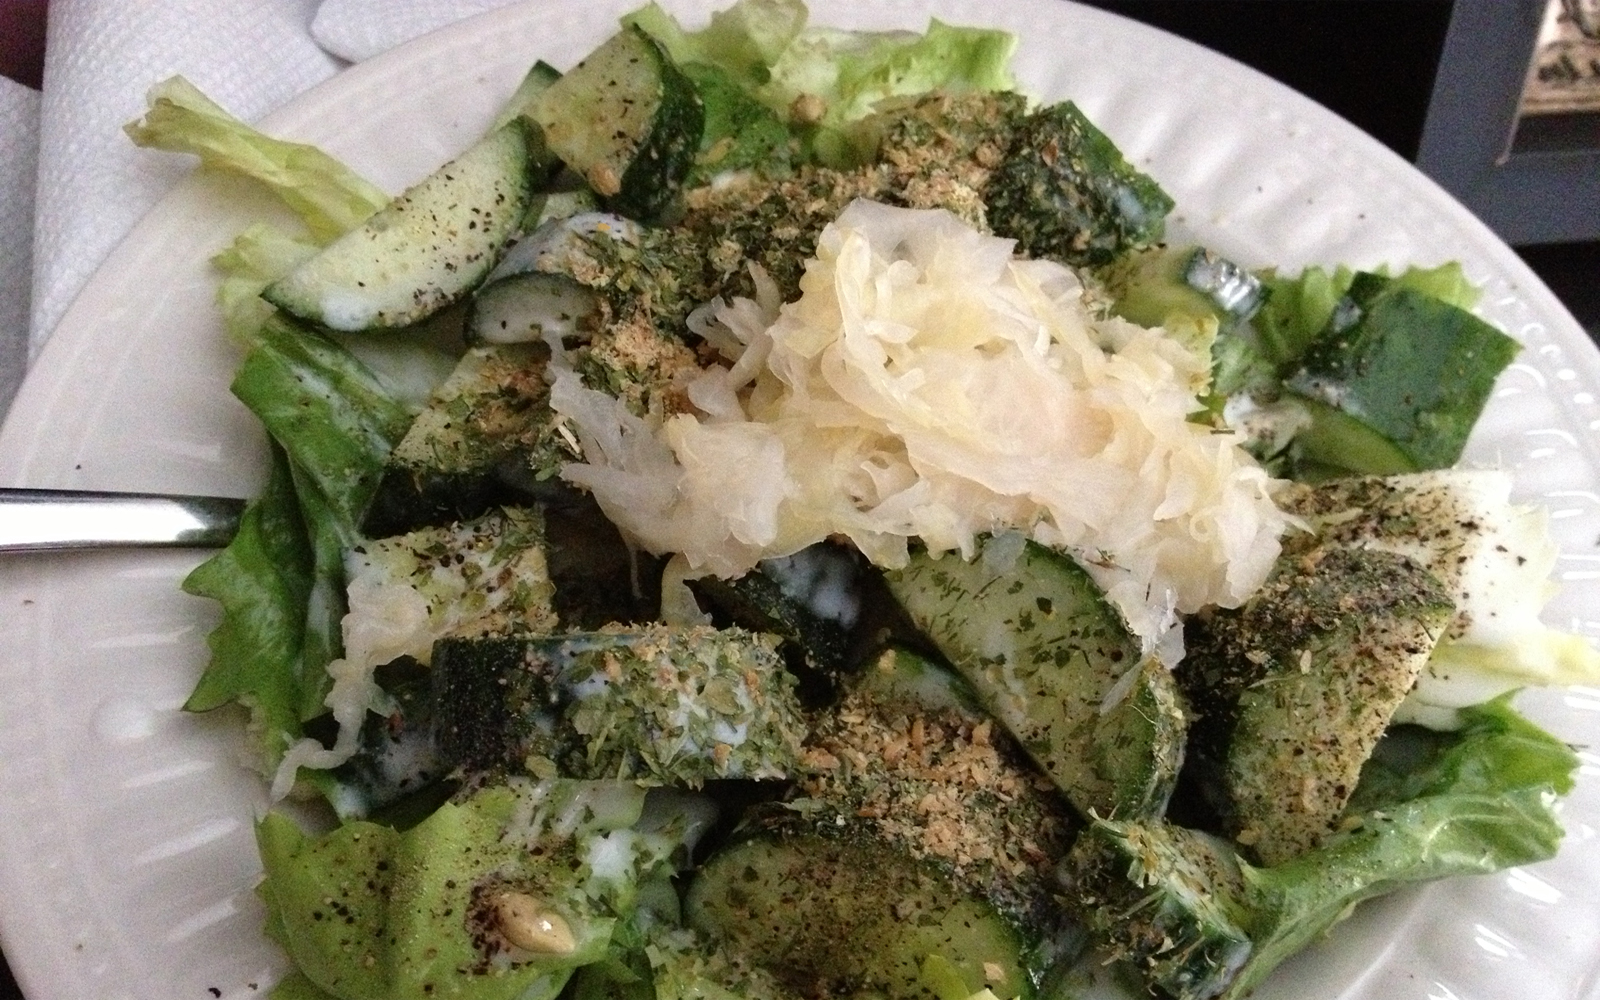 5 Ingredients That Make an Amazing Vegan Salad Dressing